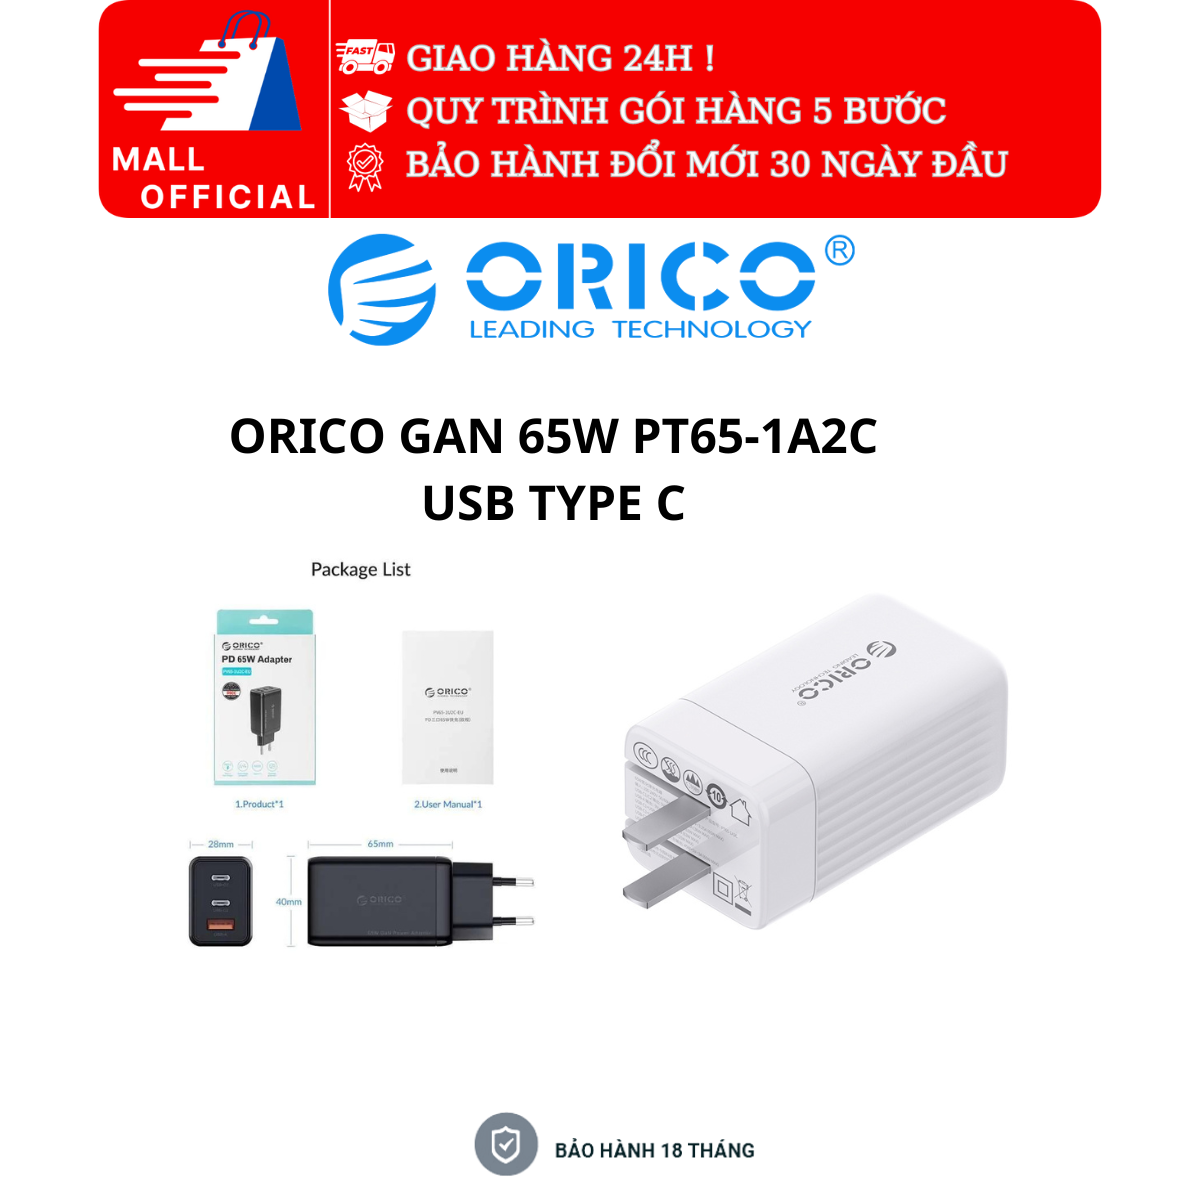 Củ sạc nhanh ORICO GAN 65W PT65-1A2C 2 Cổng USB-C 1 Cổng USB-A| Hàng Chính Hãng| Bộ Sạc Nhanh Laptop, Bộ Sạc Nhanh Macbook, Bộ Sạc Nhanh iPhone